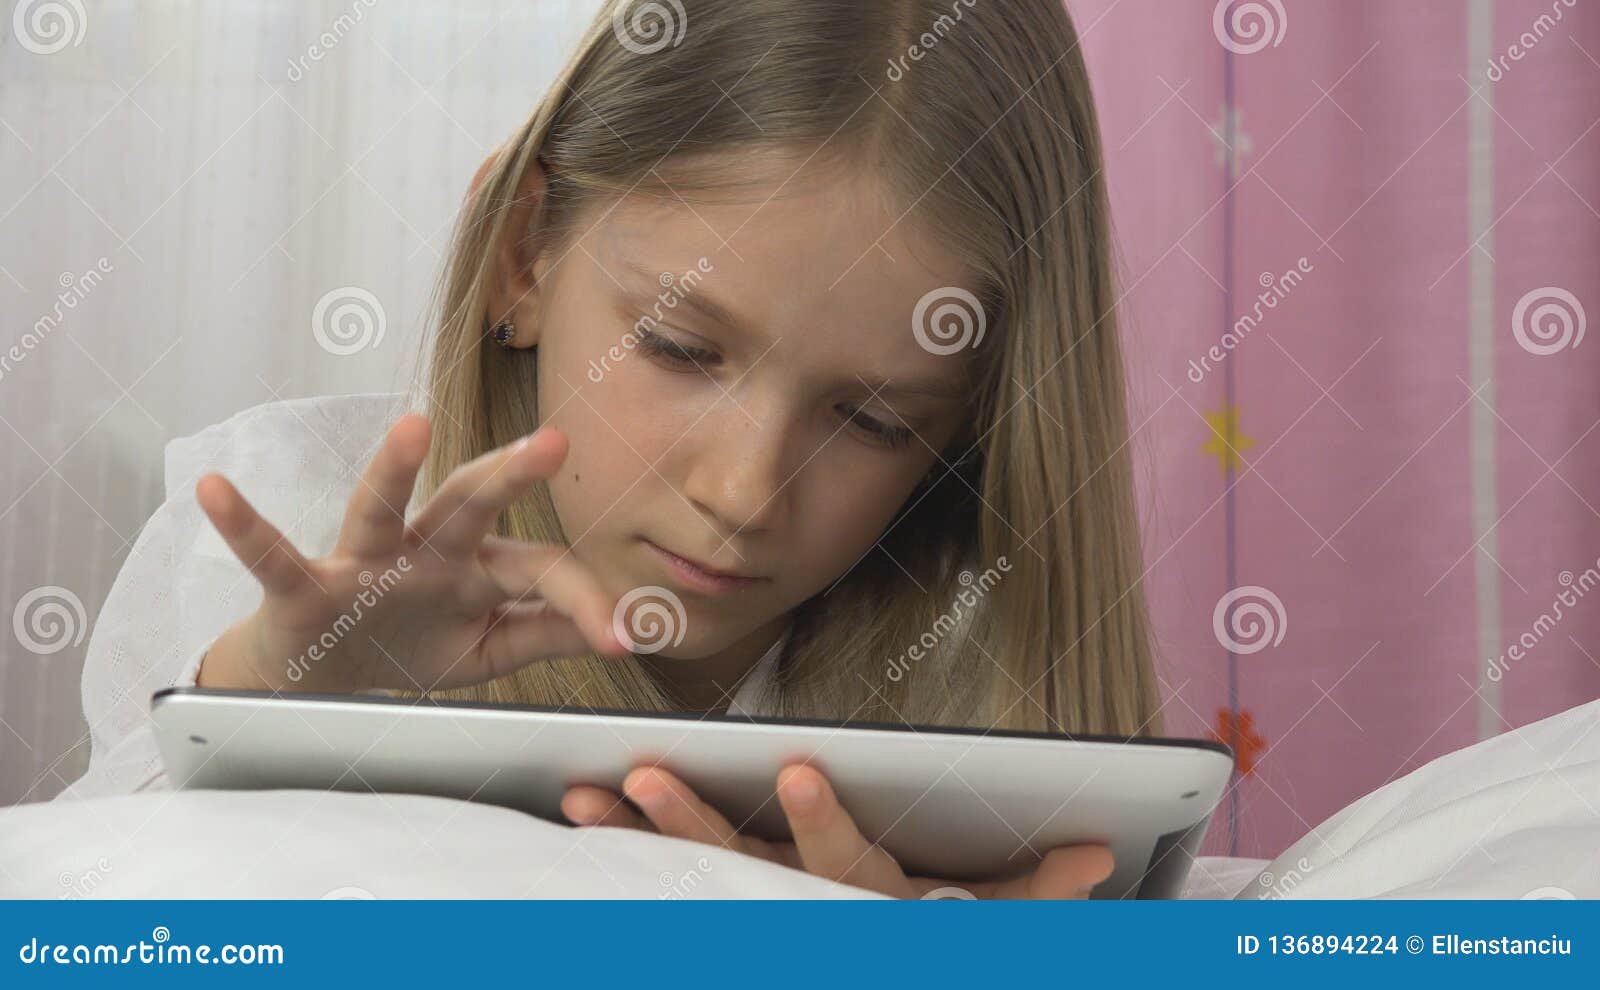 Русский домашний юные разговор. Девочка играет в планшет на кровате. Играть в планшет в кровати. Девочка с планшетом на коленках фото. Девочка играет в планшет в комнате домашнее.